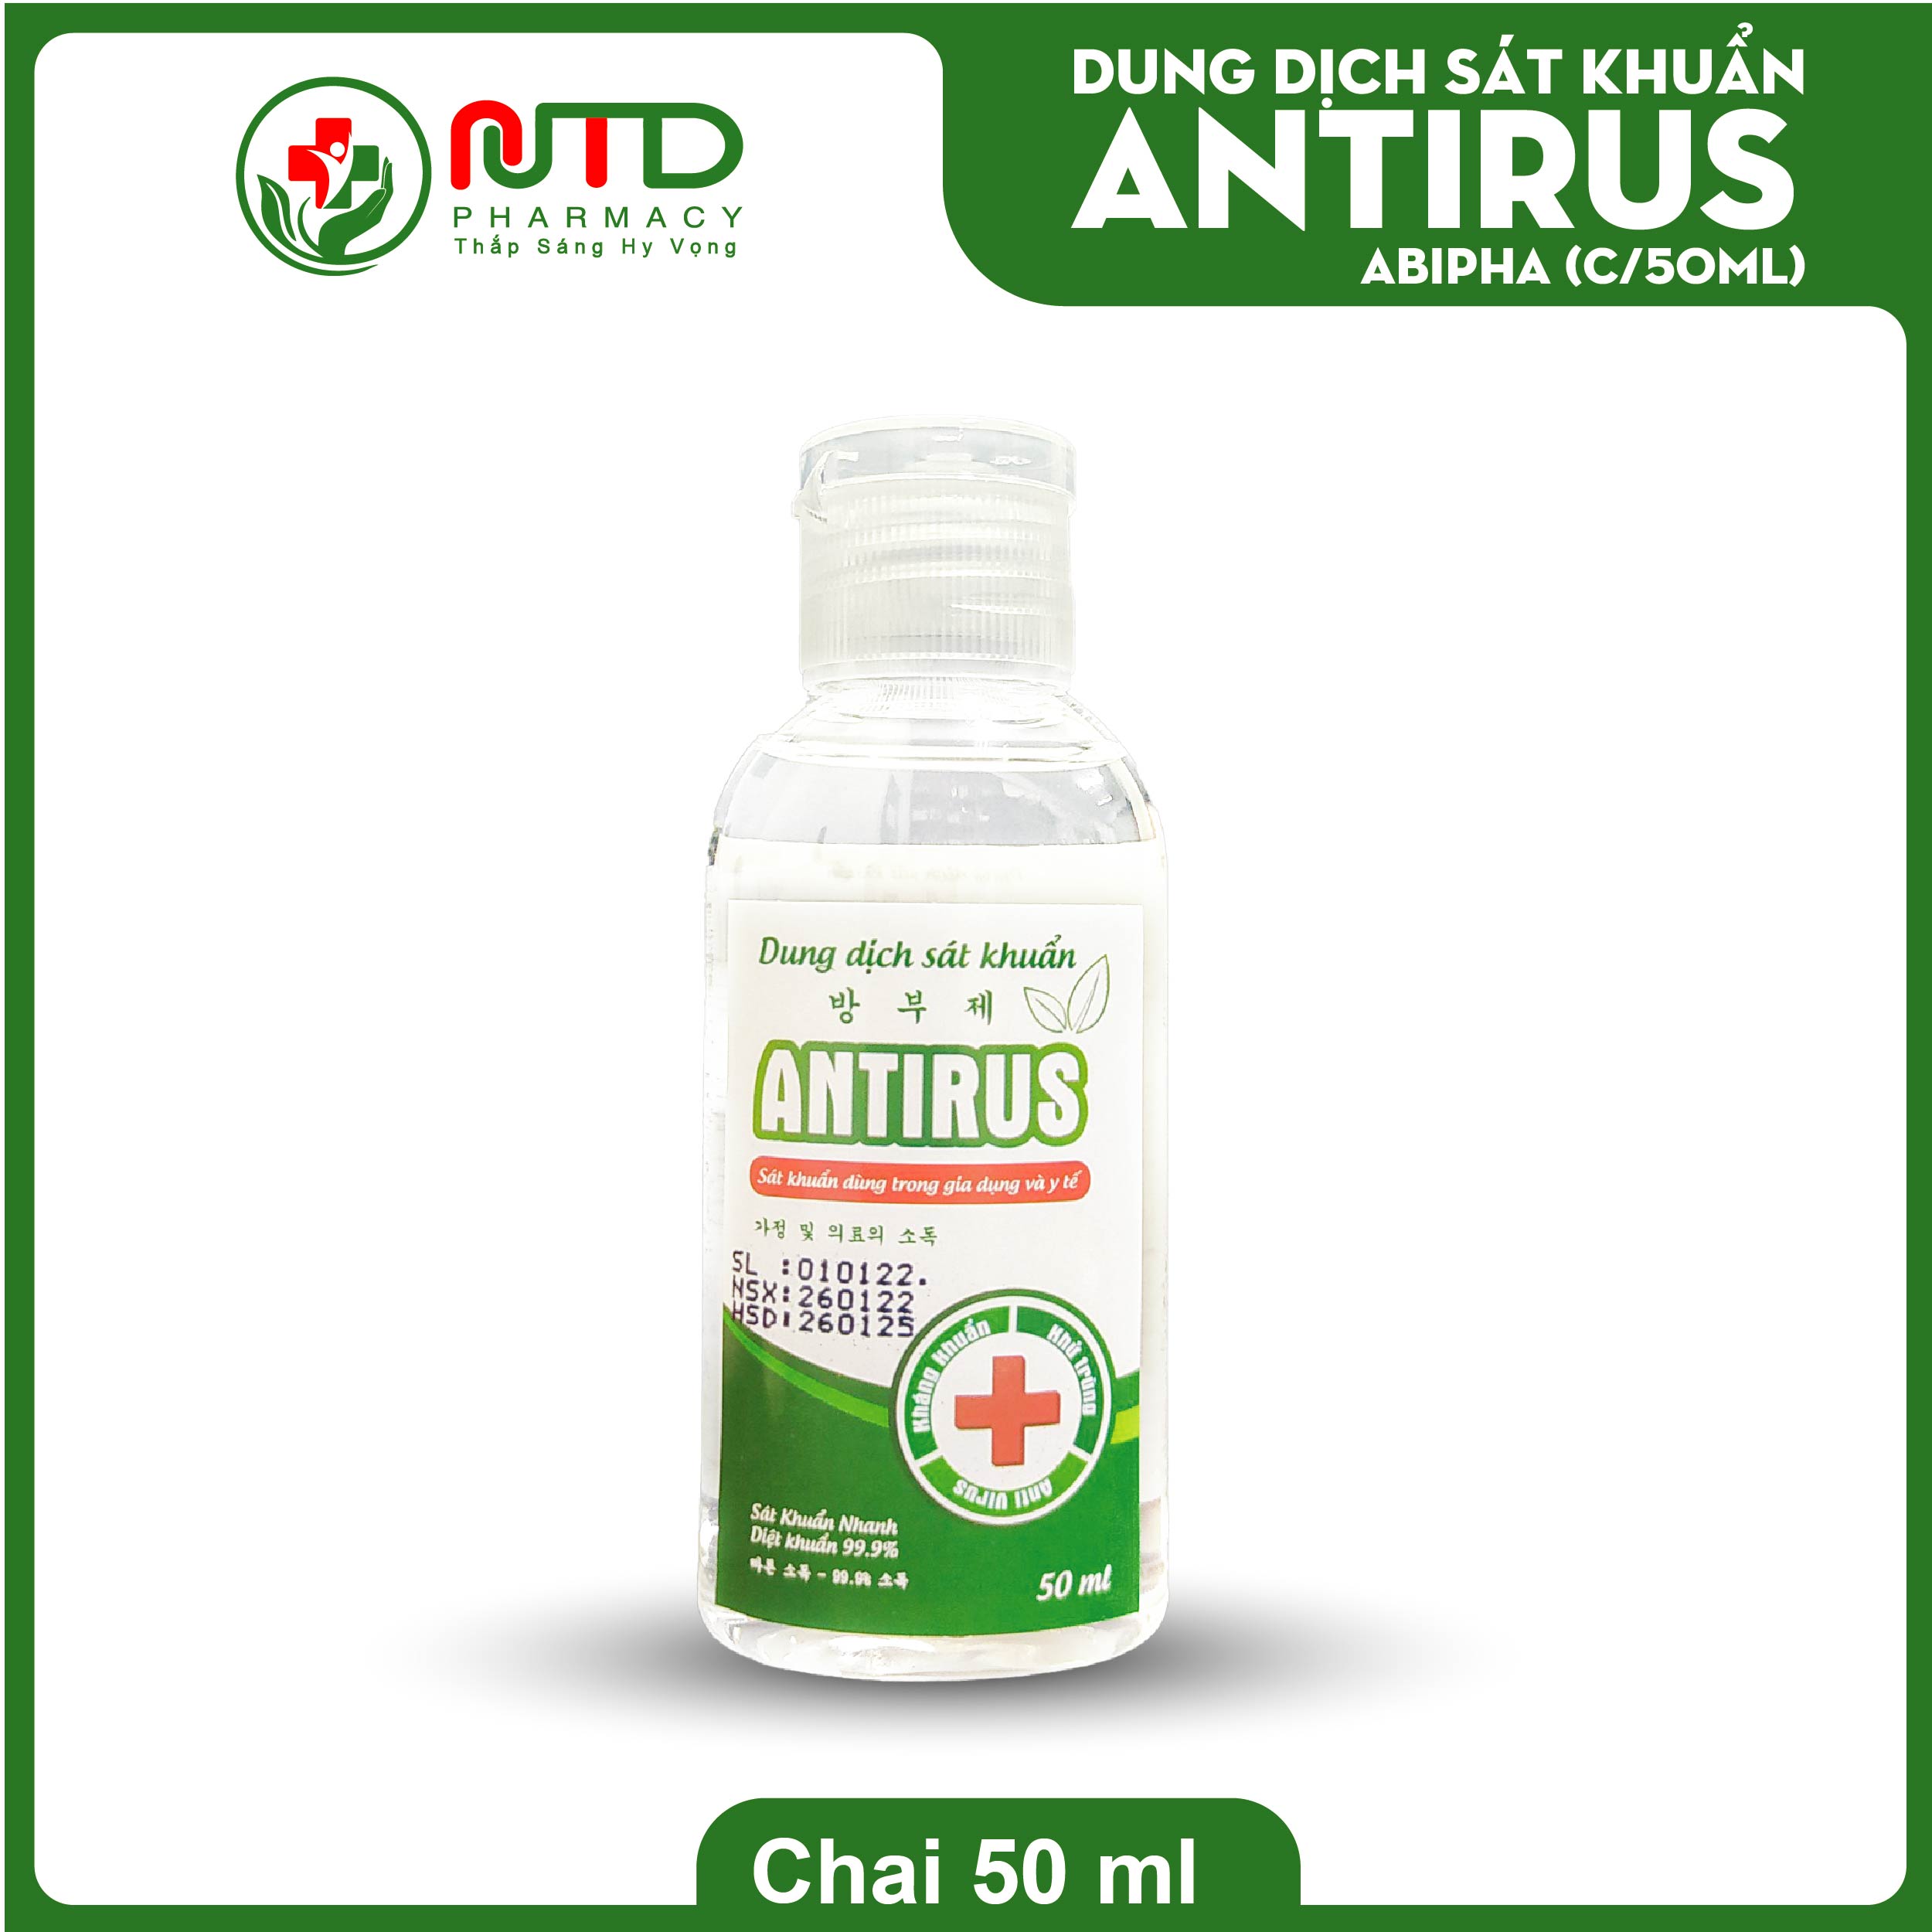 Dung dịch cồn sát khuẩn Antirus hương sả chanh 50 ml